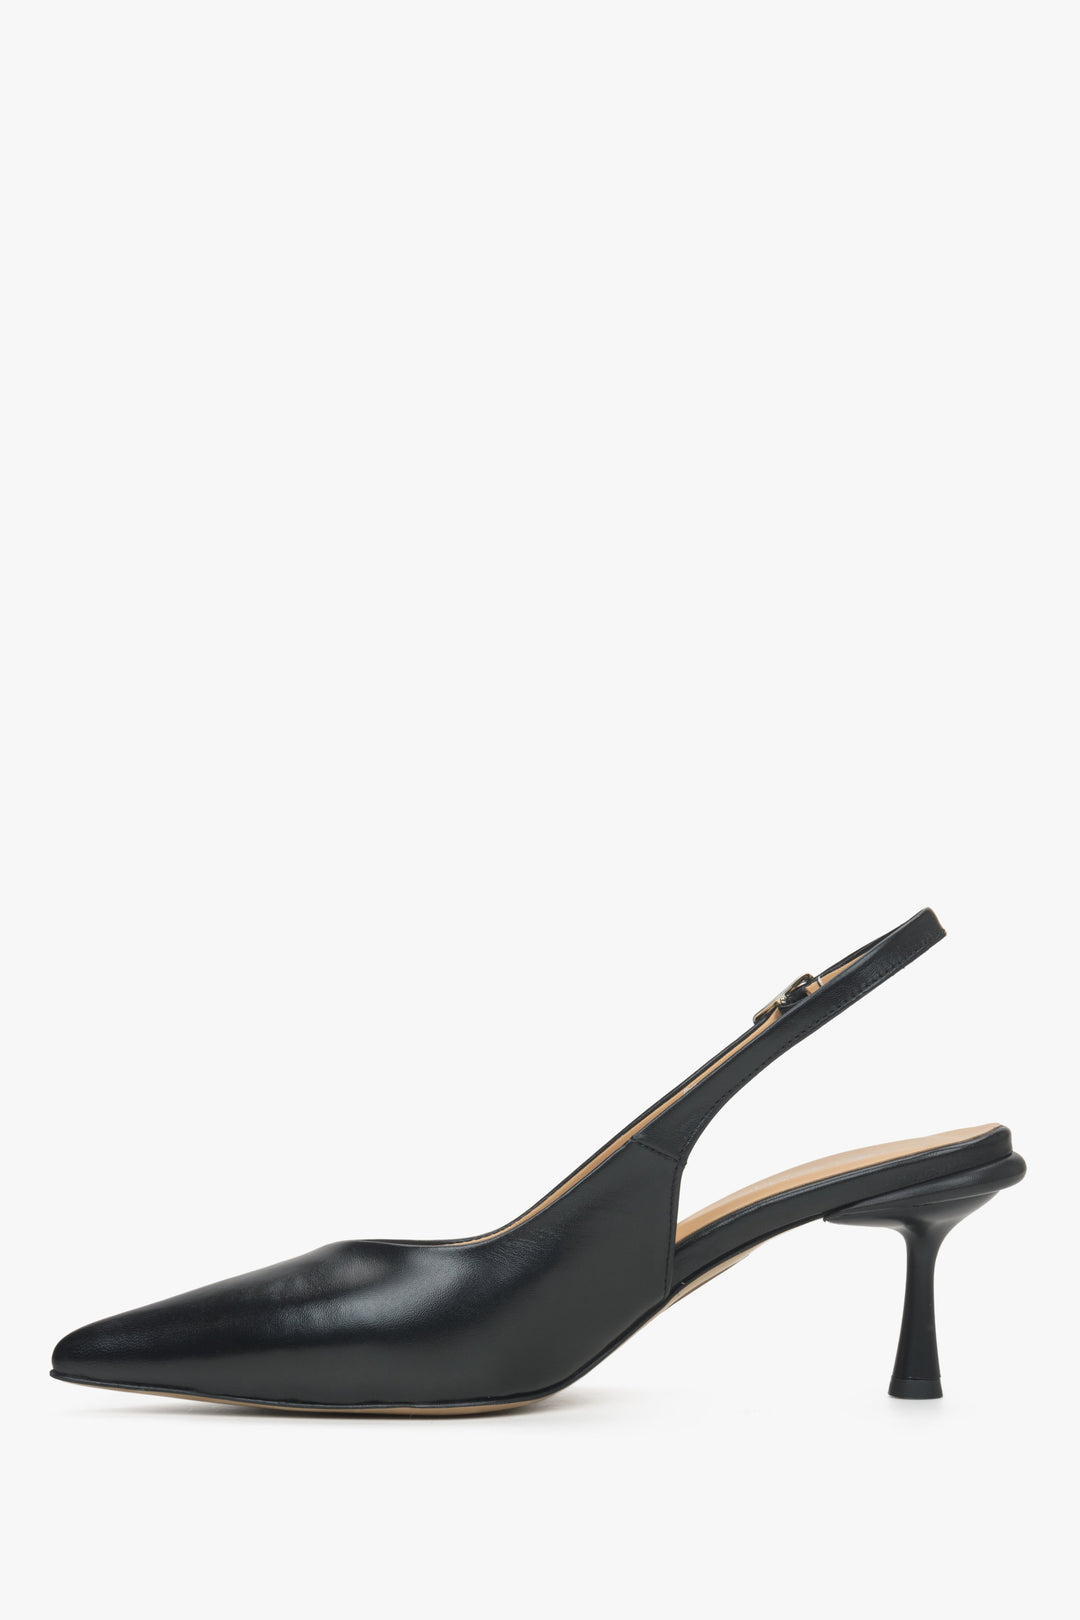 Women's black leather slingback shoes by Estro - shoe profile.